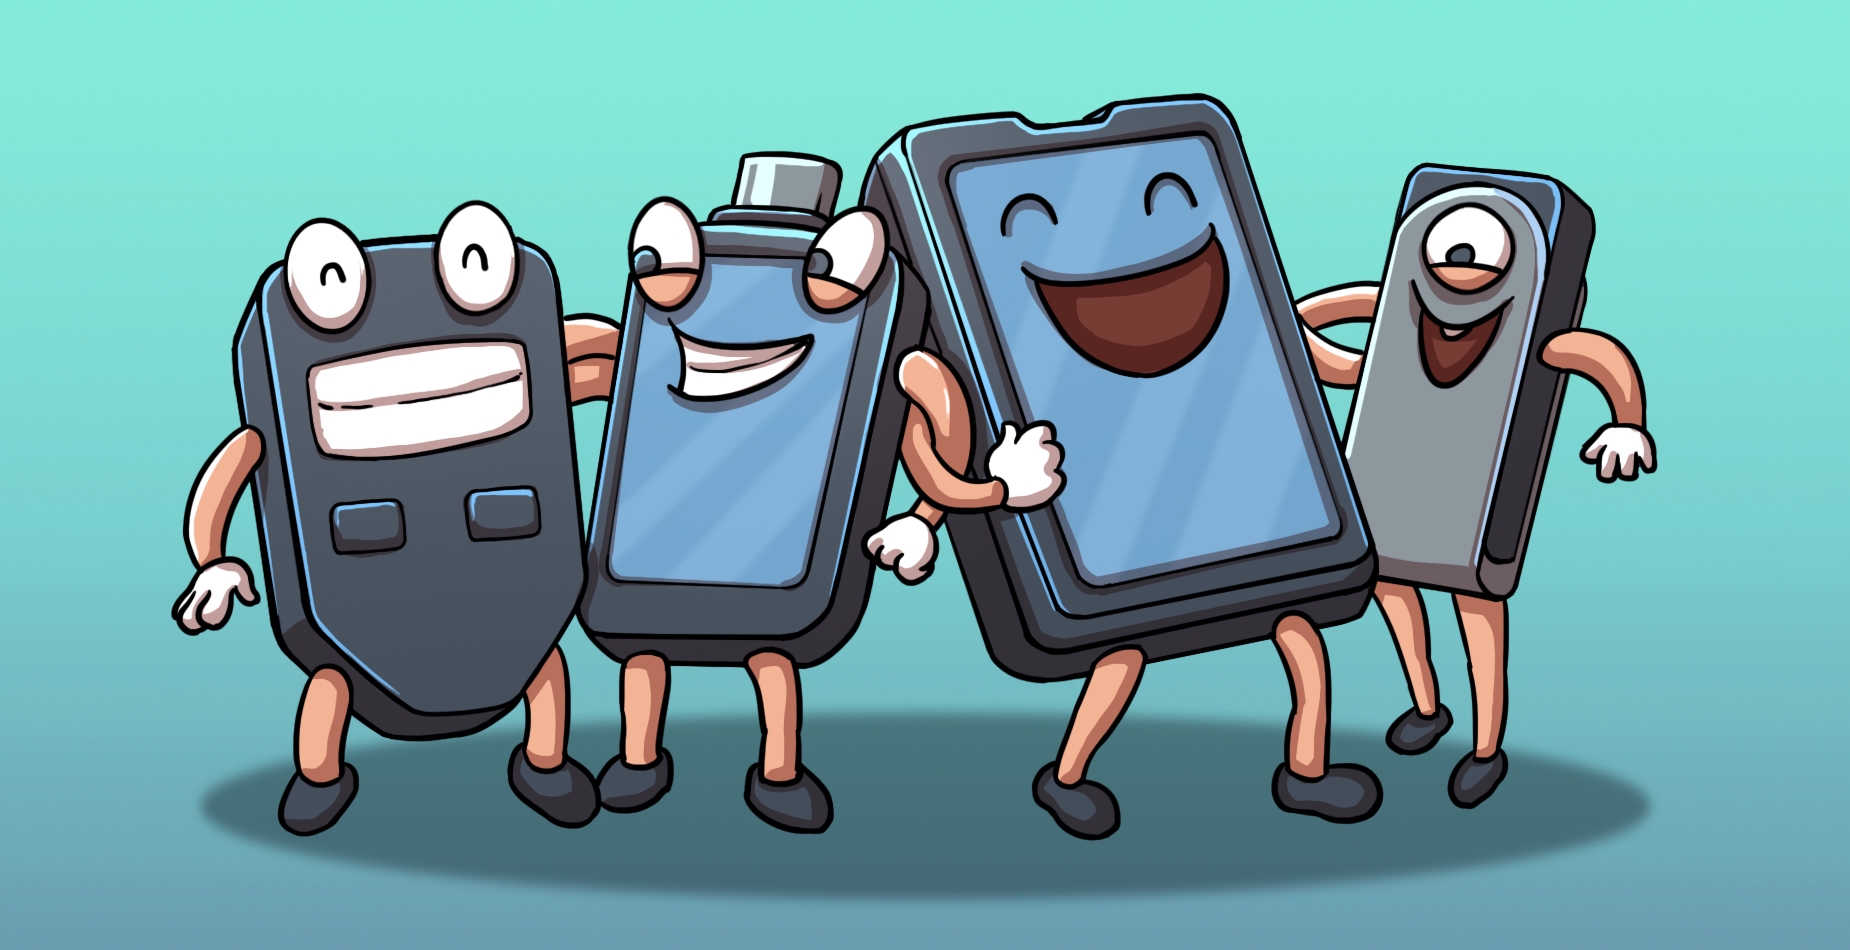 Alle Hardware Wallets illustriert dargestellt auf einem Gruppenfoto mit Gesicht, Armen und Beinen